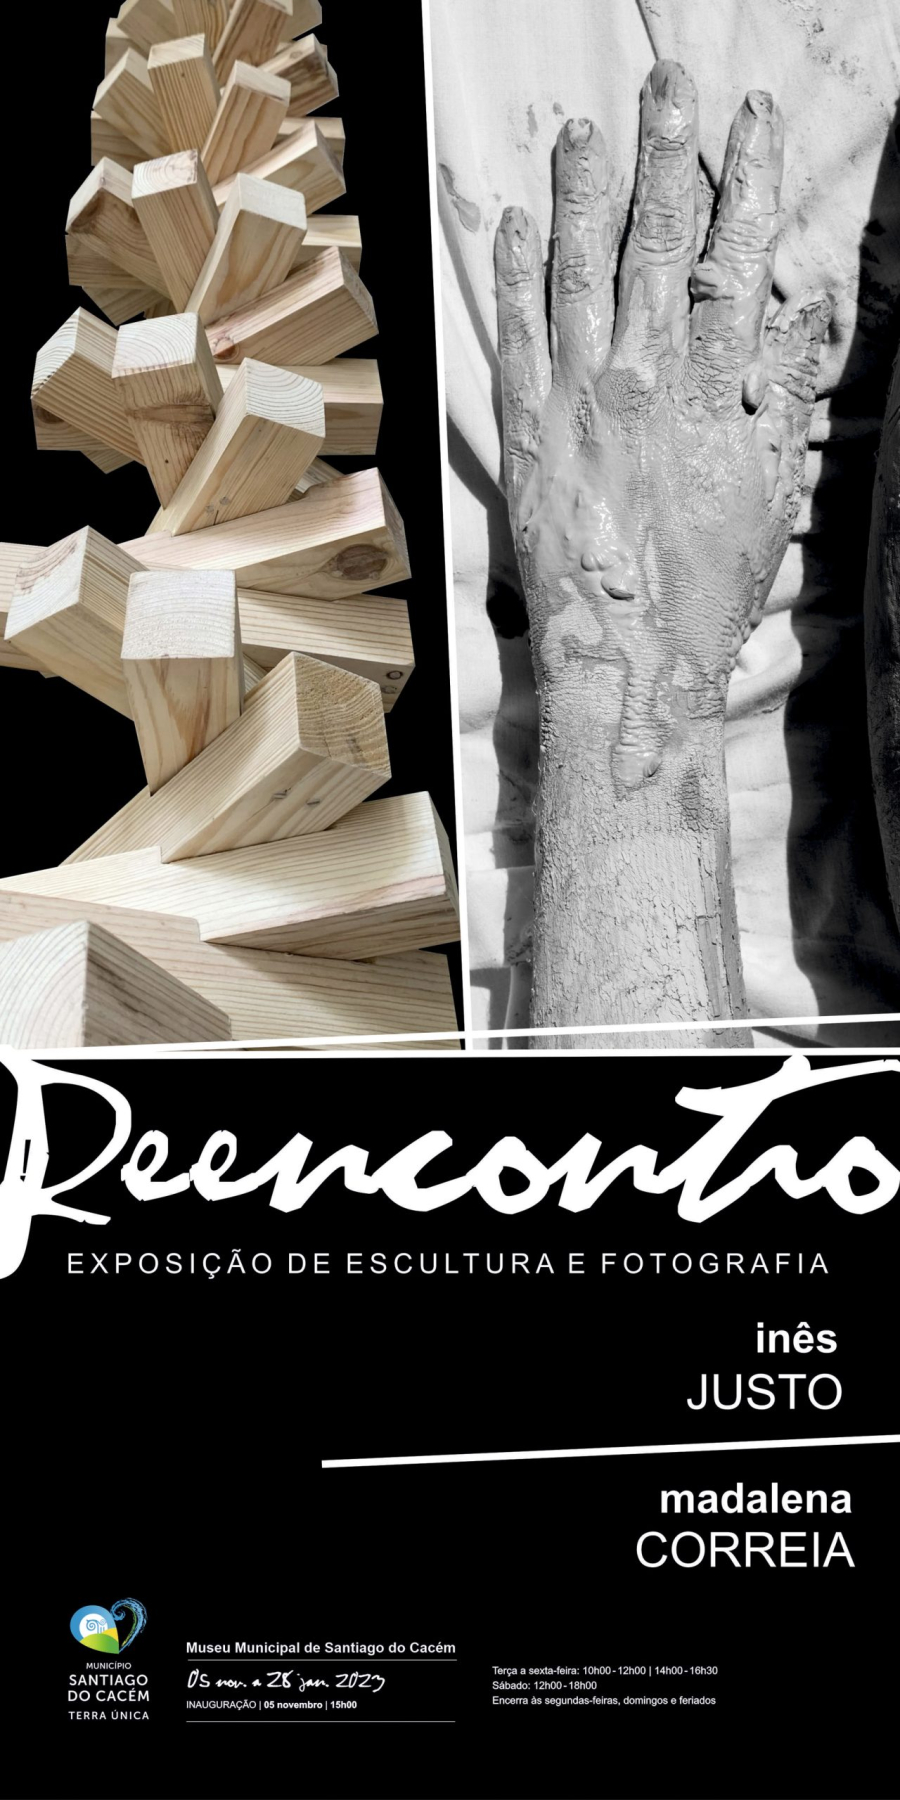 Exposição de Escultura e Fotografia “Reencontro” de Inês Justo e Madalena Correia